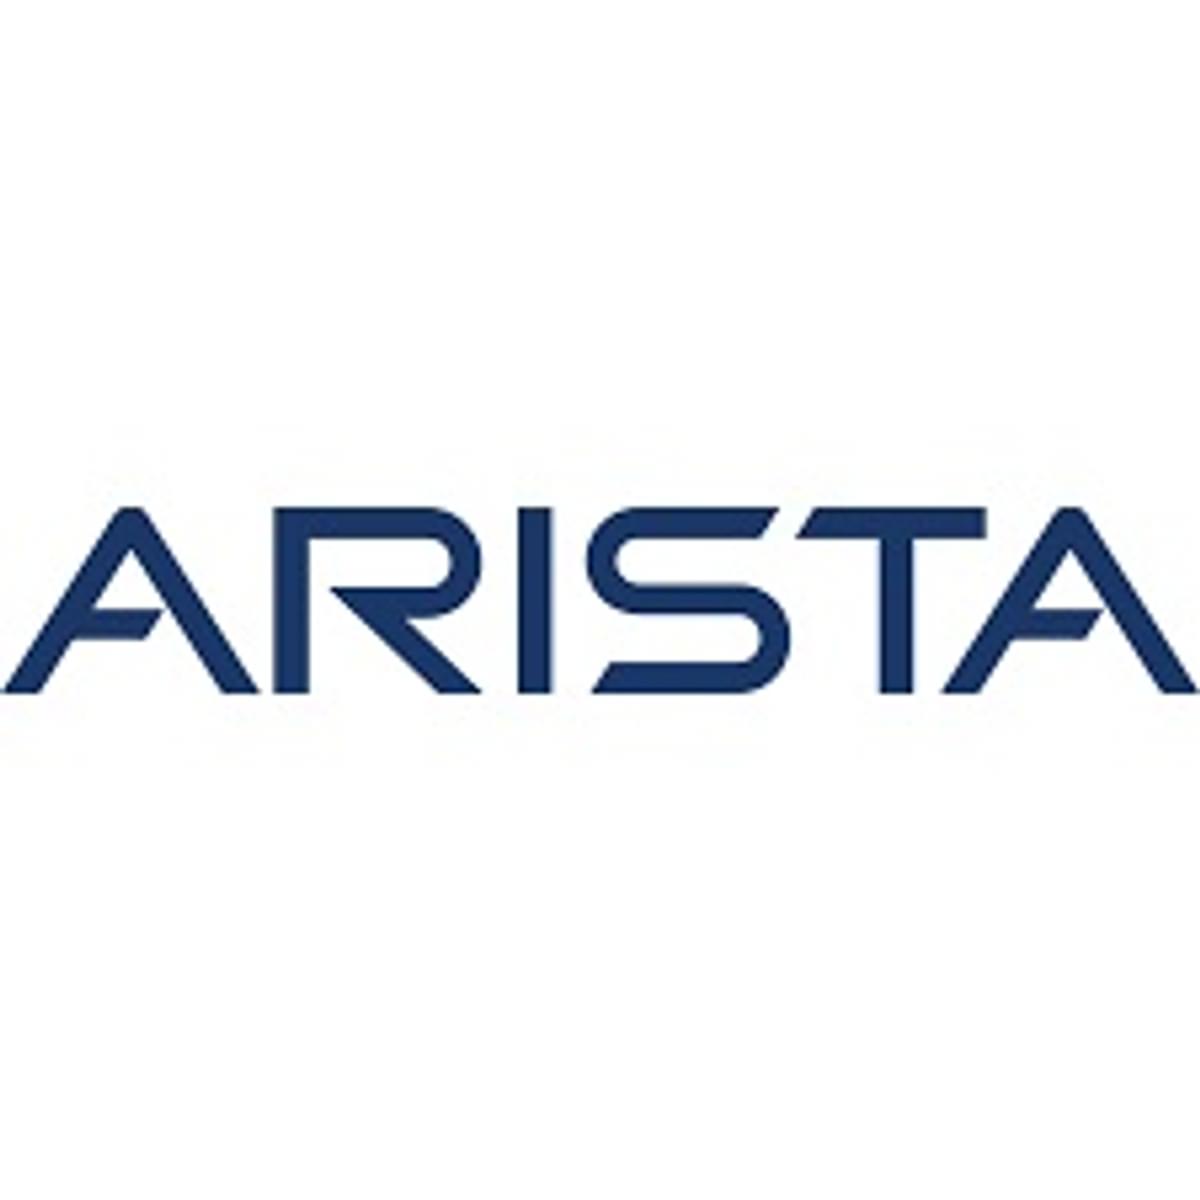 Arista introduceert volgende generatie cloudrouting image